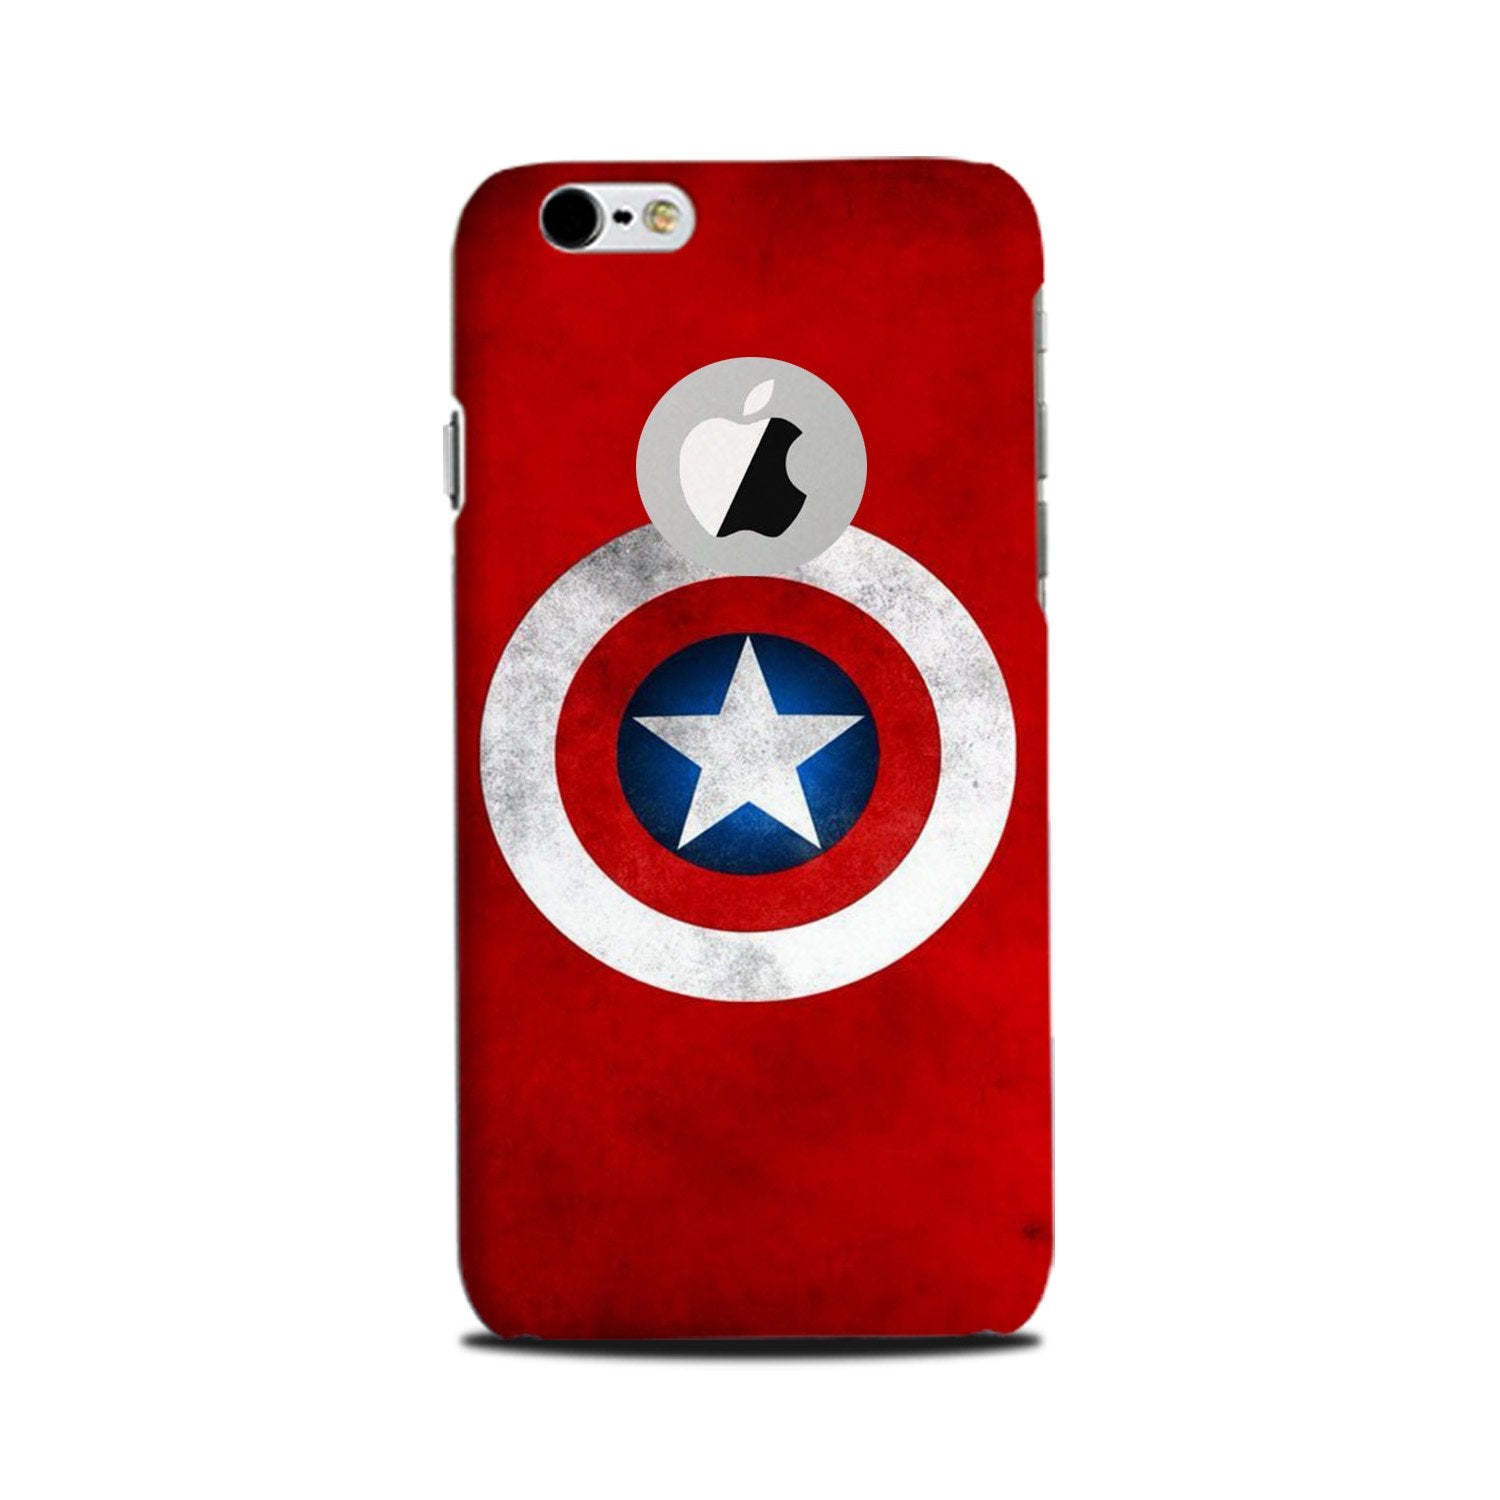 Captain America Case for iPhone 6 Plus / 6s Plus logo cut  (Design No. 249)